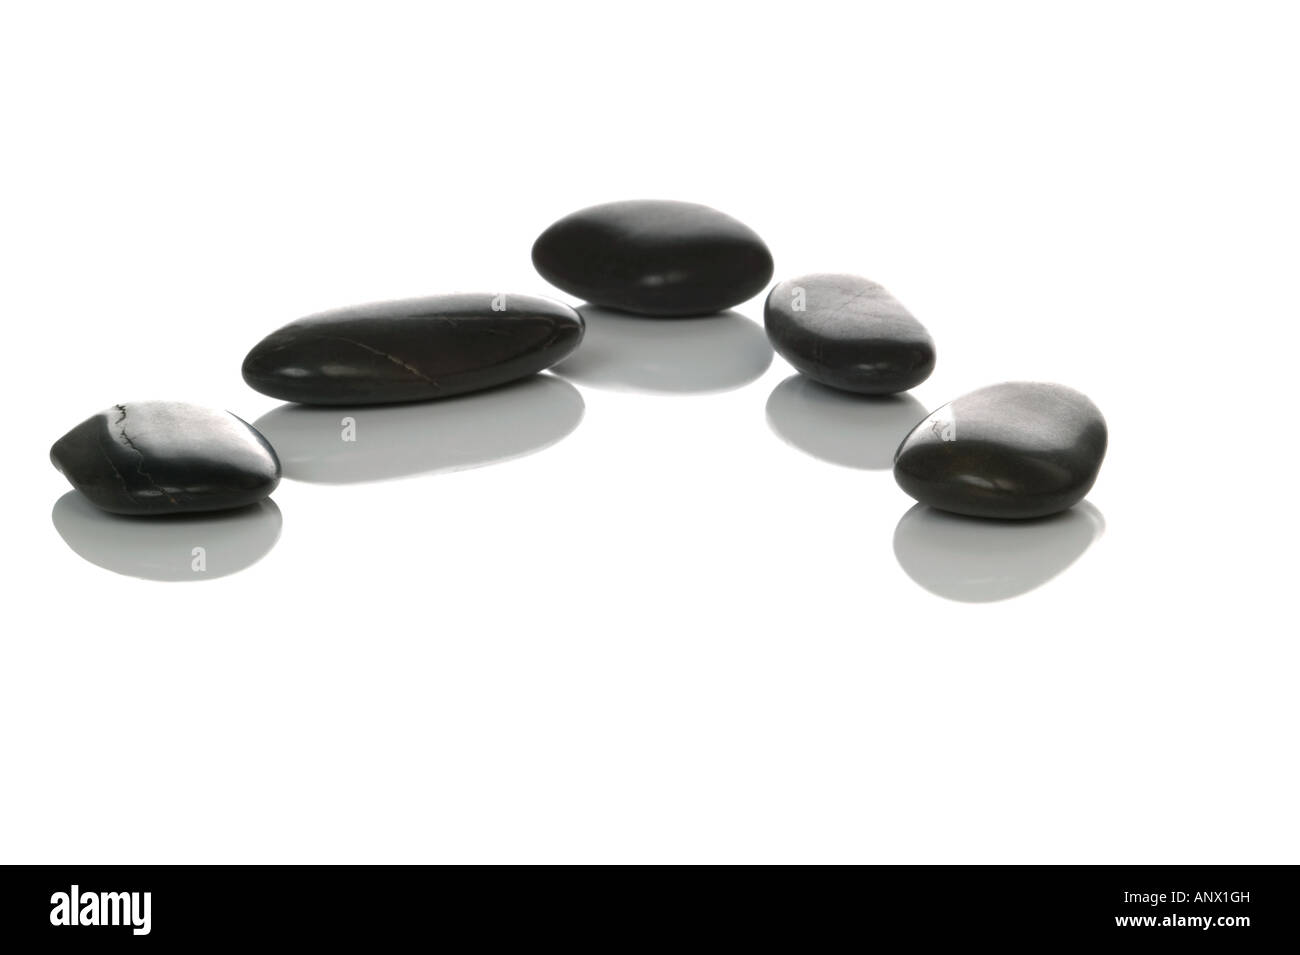 Cinq cailloux noirs avec des réflexions sur un fond blanc Banque D'Images